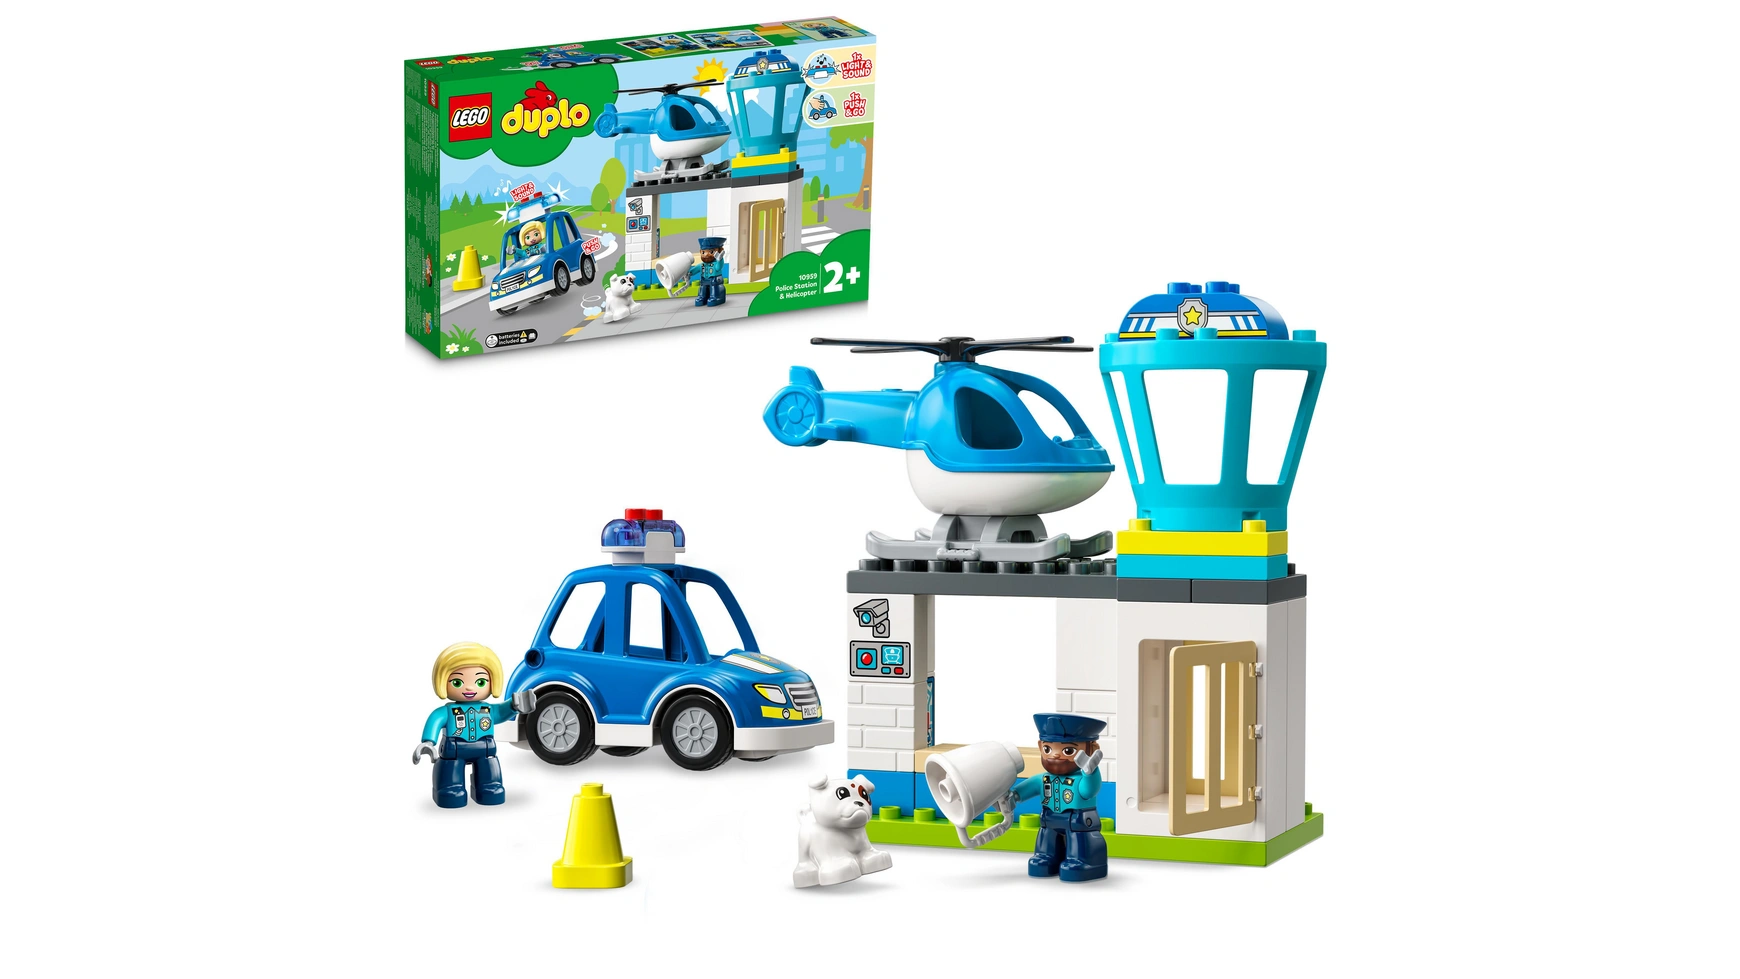 Lego DUPLO Полицейский участок с вертолетом, полицейская игрушка lego duplo town ветряная турбина и электромобиль развивающая игрушка для детей от 2 лет и старше